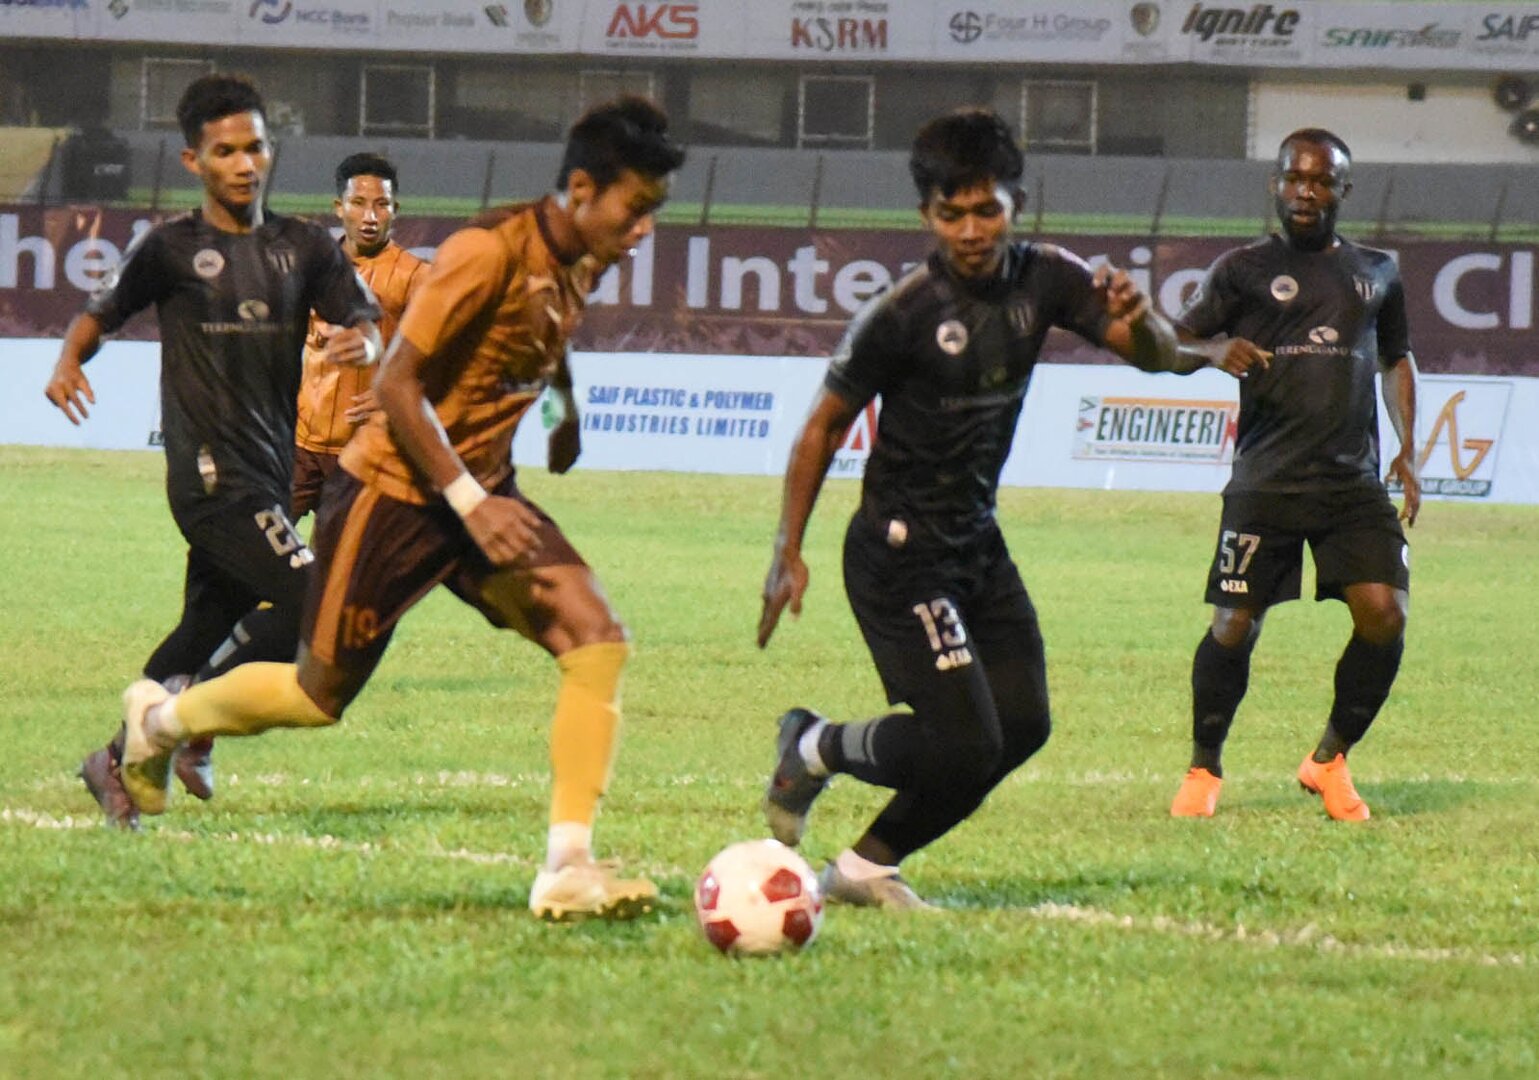 Terengganu fc players